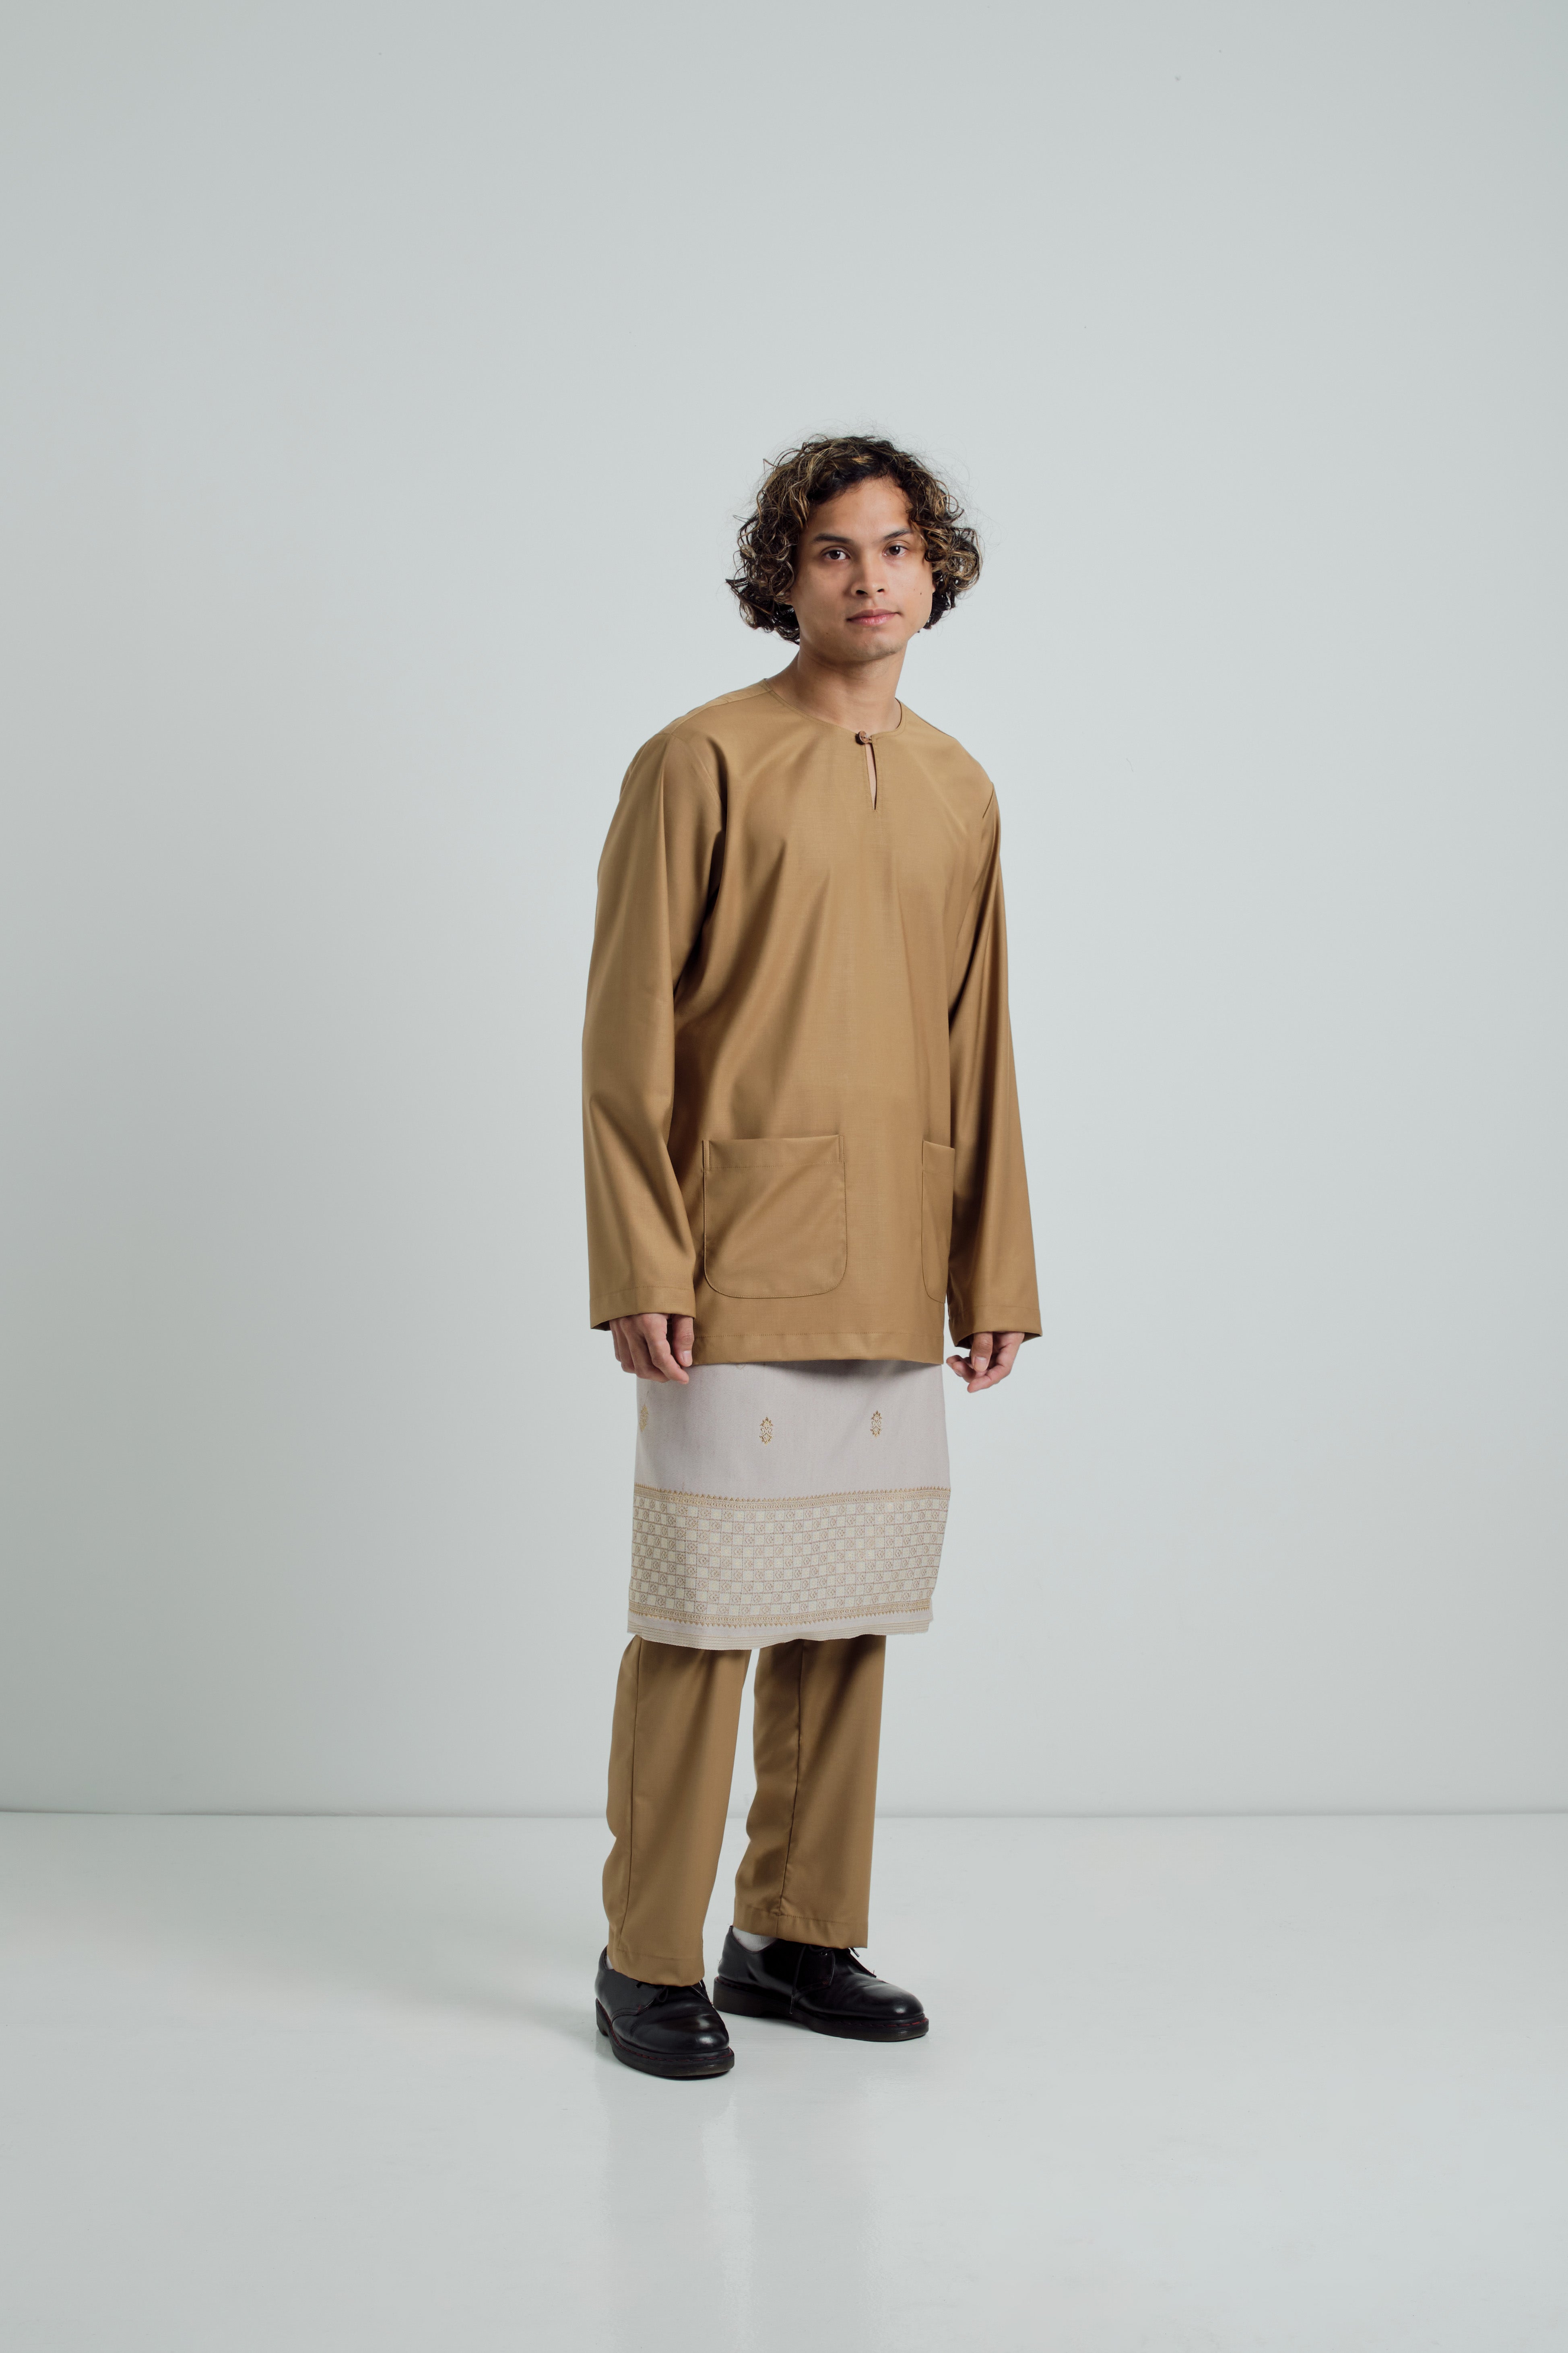 Patawali Modern Fit Baju Melayu Teluk Belanga - Mustard Brown